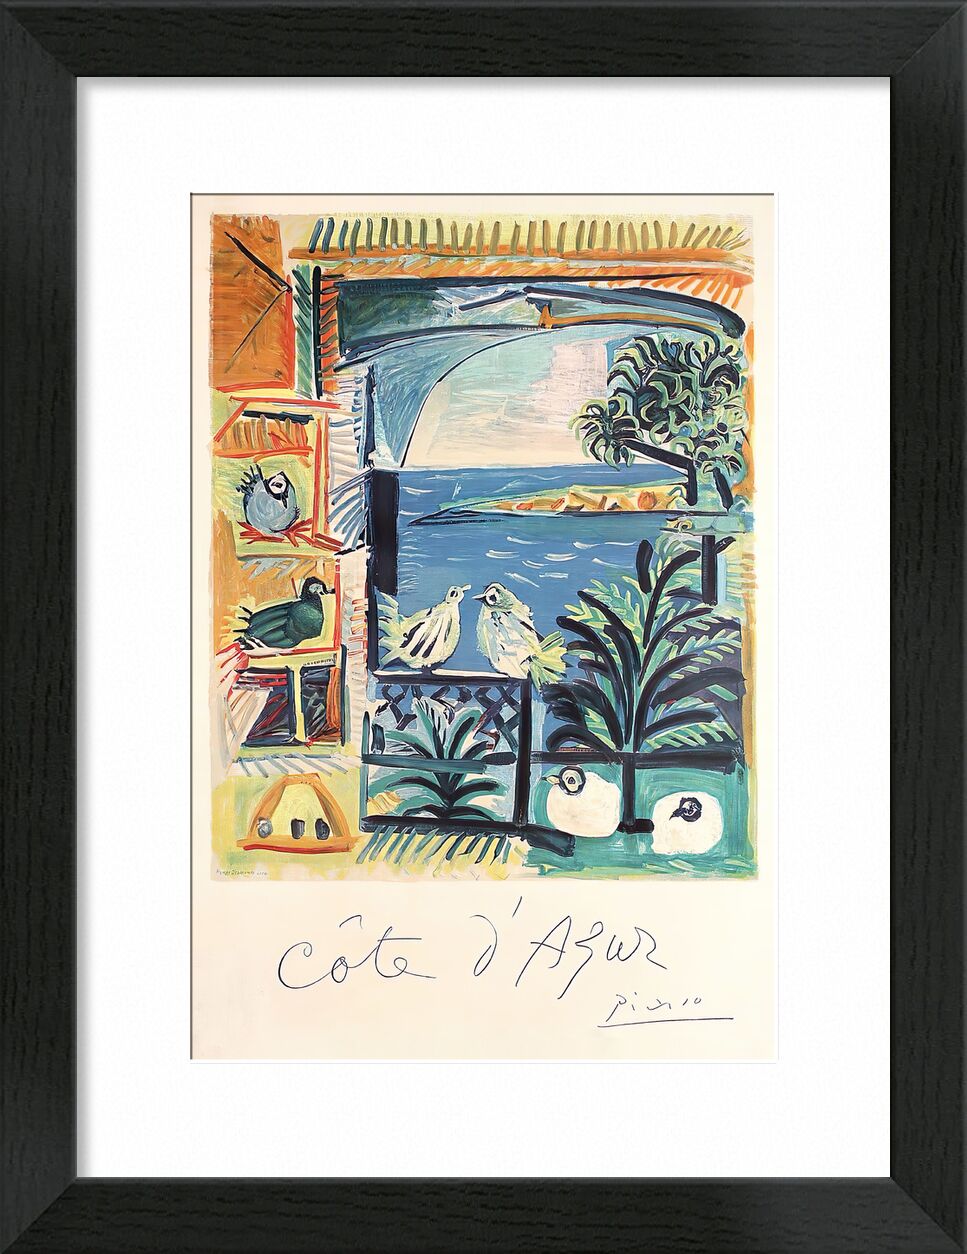 Côte d'Azur - The studio of Velazquez and his Pigeons - Picasso von Bildende Kunst, Prodi Art, Picasso, Tauben, Französische Riviera, Frankreich, Malwerkstatt